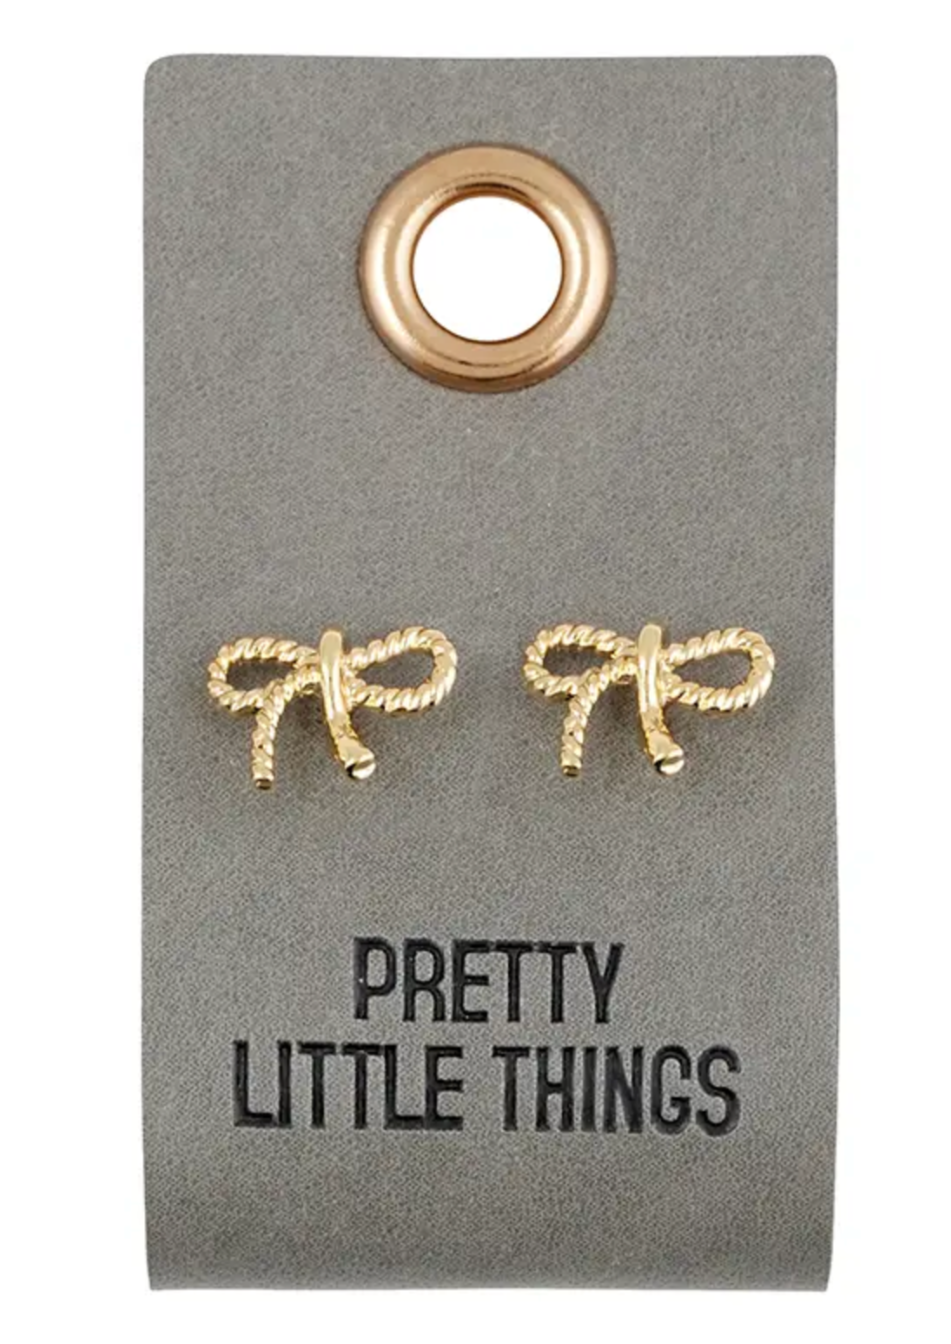 Pretty Little Things Earrings